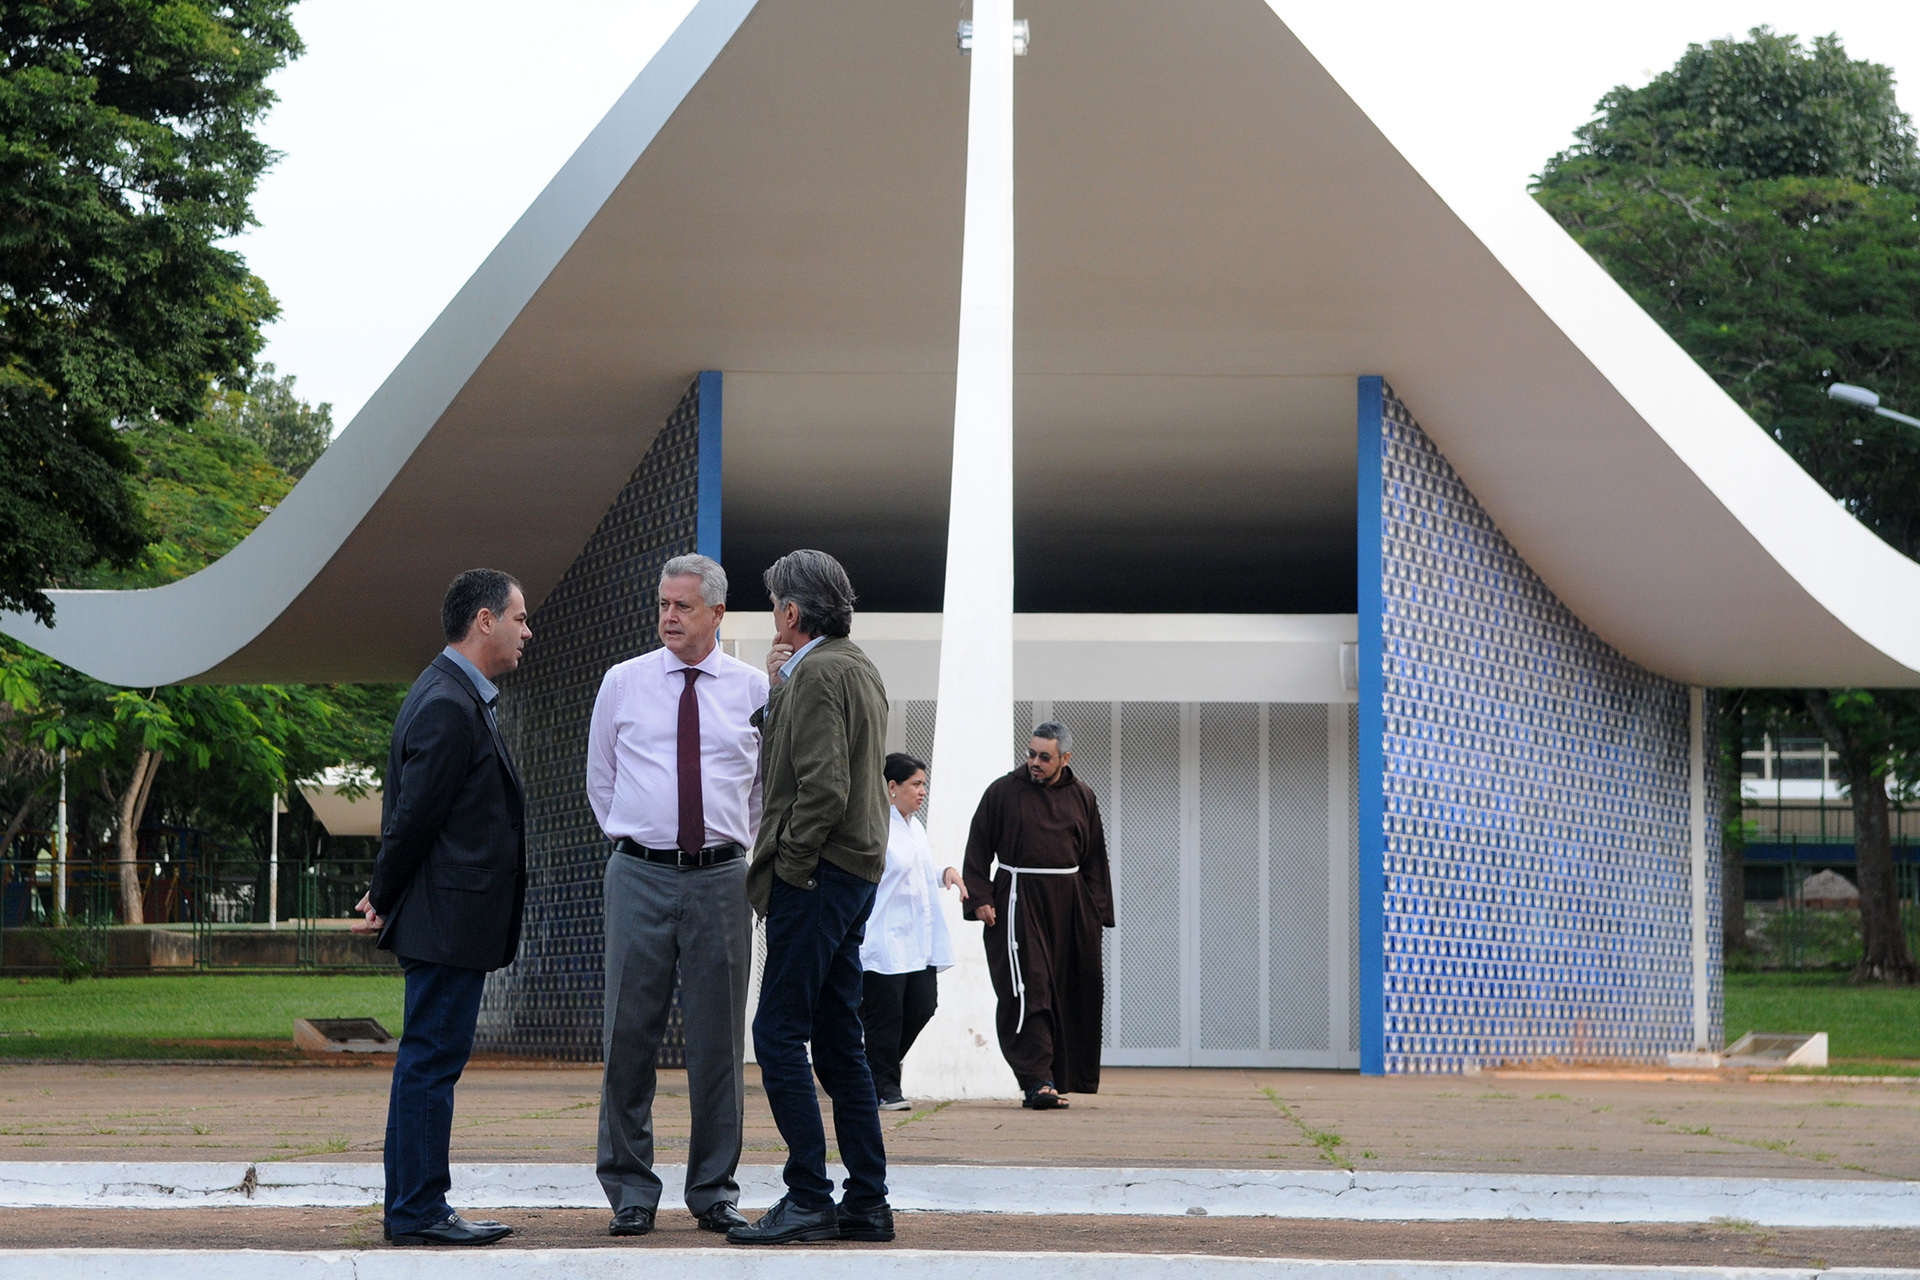 Igrejinha da Asa Sul, projetada por Oscar Niemeyer, completará seis décadas em junho. Governador Rodrigo Rollemberg esteve no local na manhã desta sexta-feira (20)